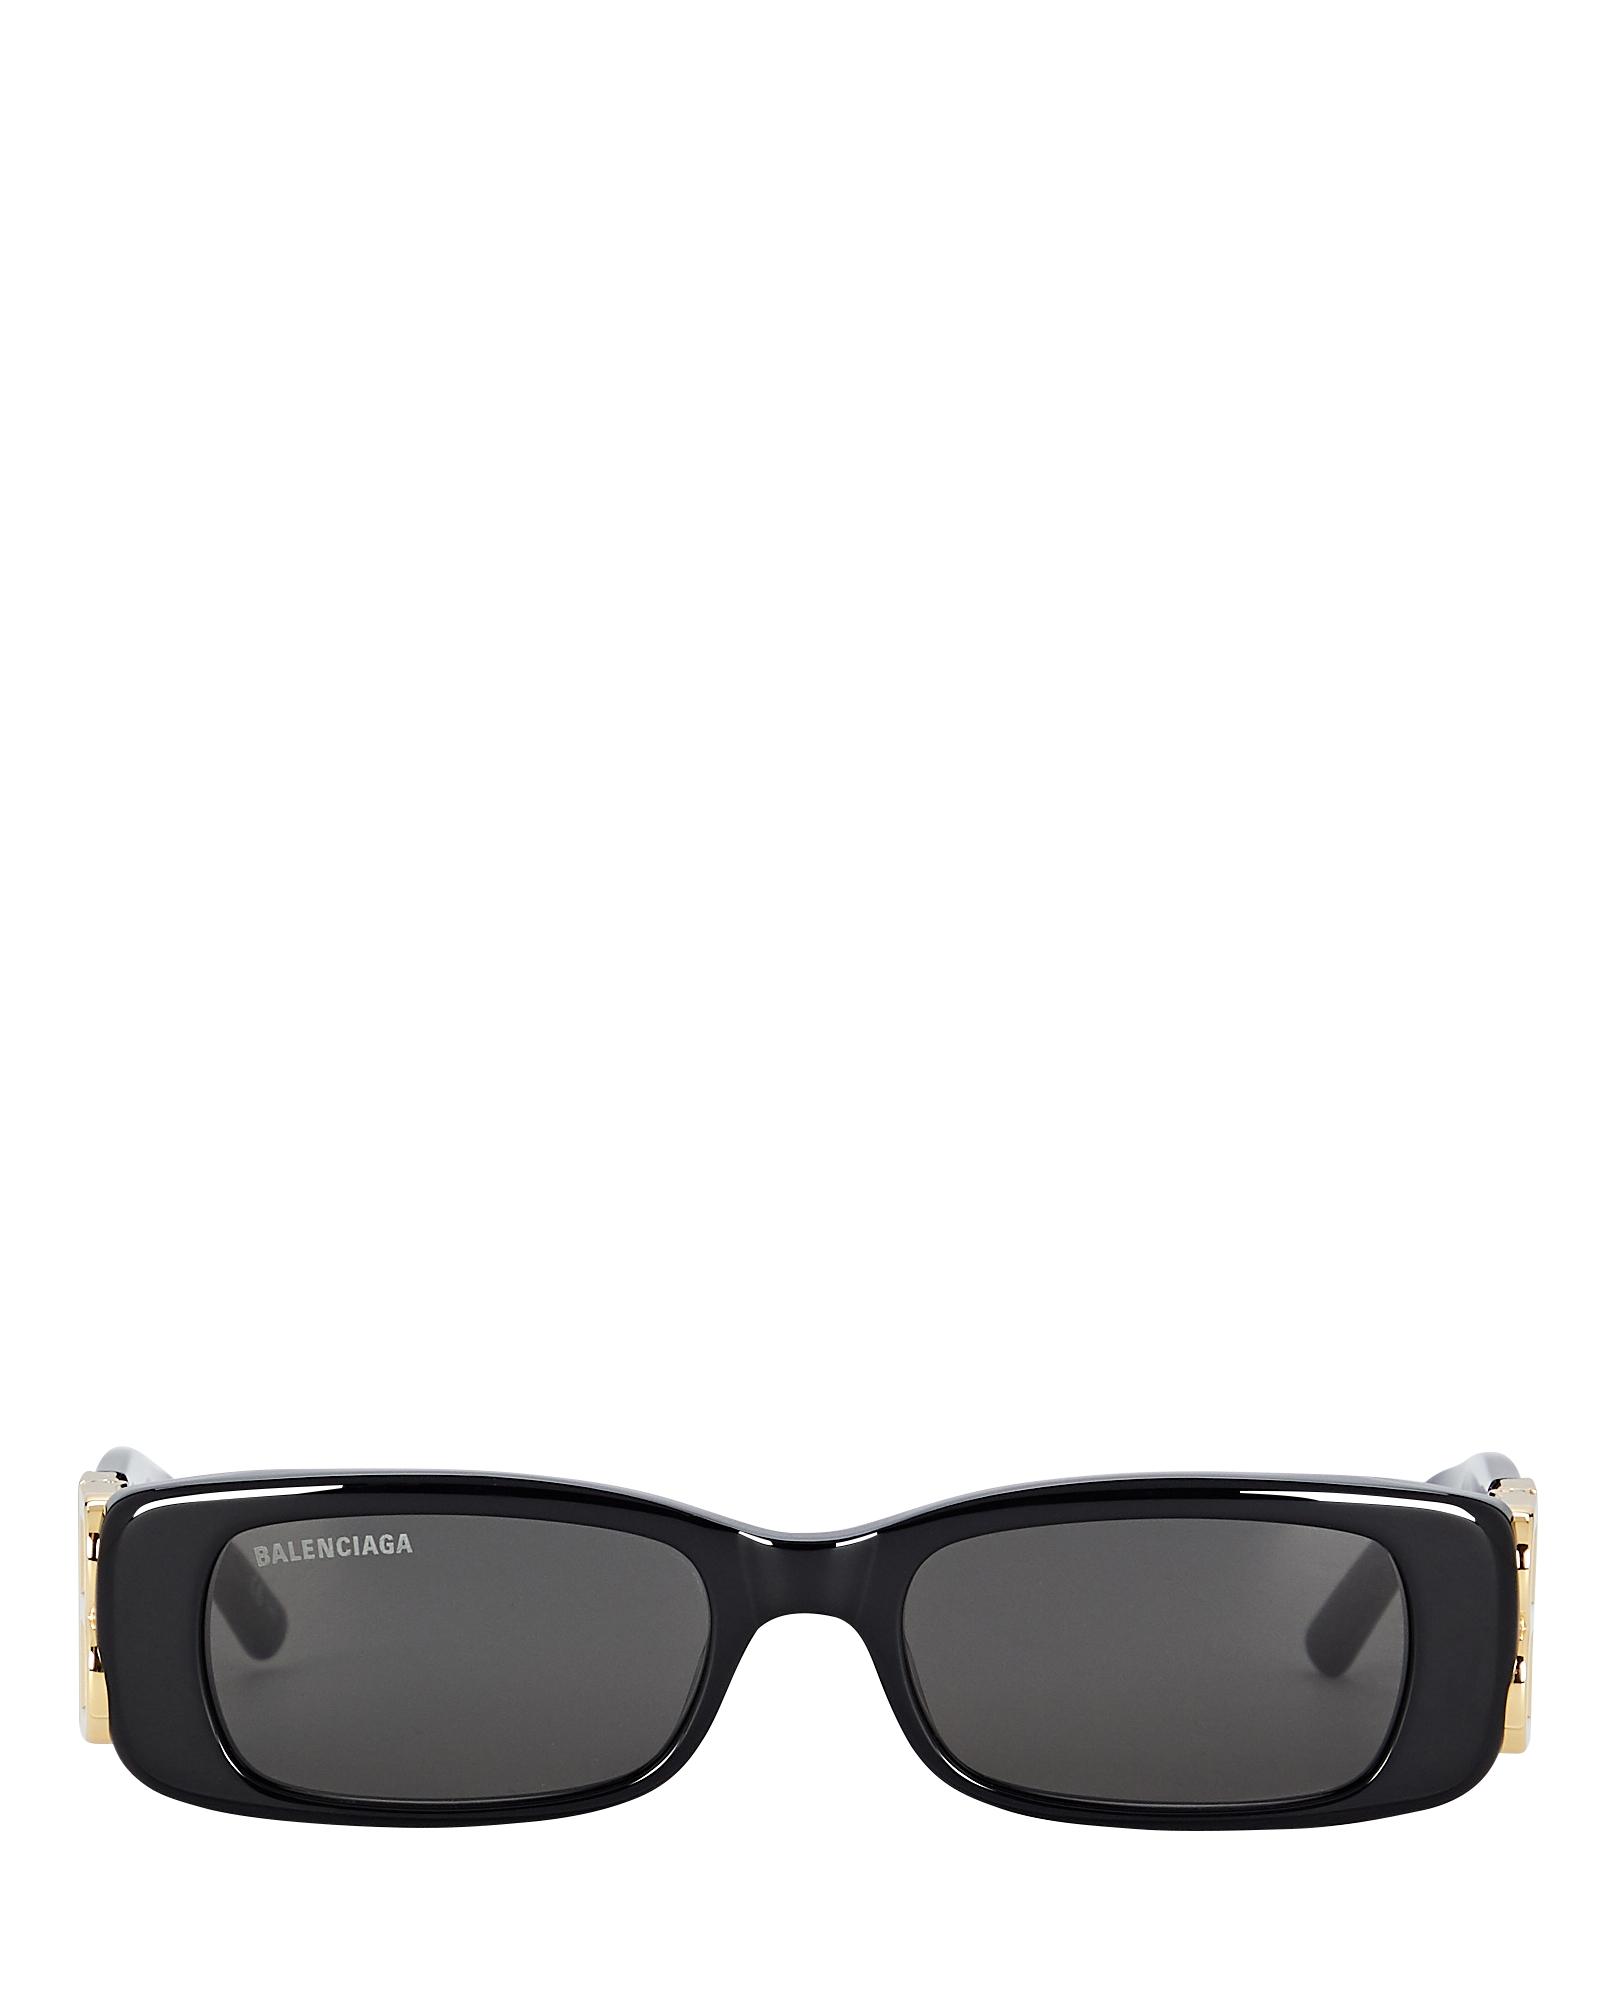 Balenciaga Dynasty Logo Thin Sunglasses in Black - Lyst